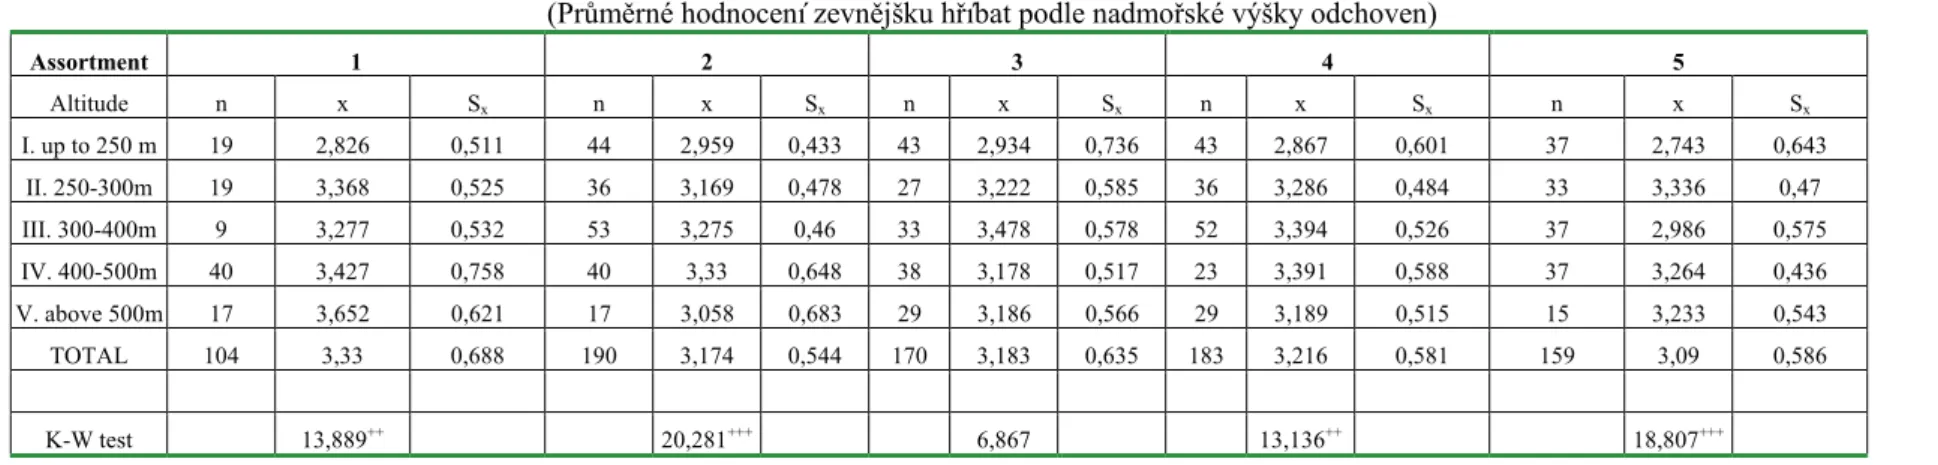 Table 2 – Average total exterior grade of the foals according to the rearing house´s altitude  (Pr�m�rné hodnocení zevn�jšku h�íbat podle nadmo�ské výšky odchoven)